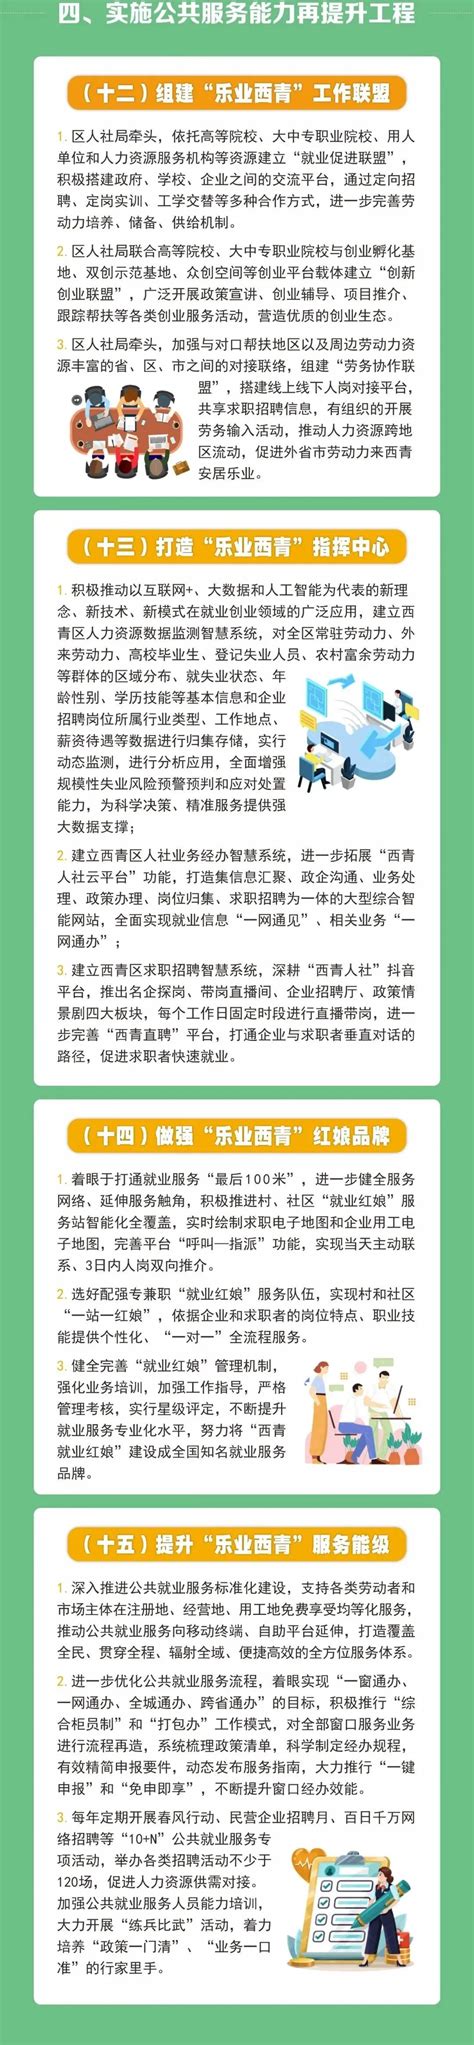 西青区项目“拿地即开工”实现常态化 - 西青要闻 - 天津市西青区人民政府